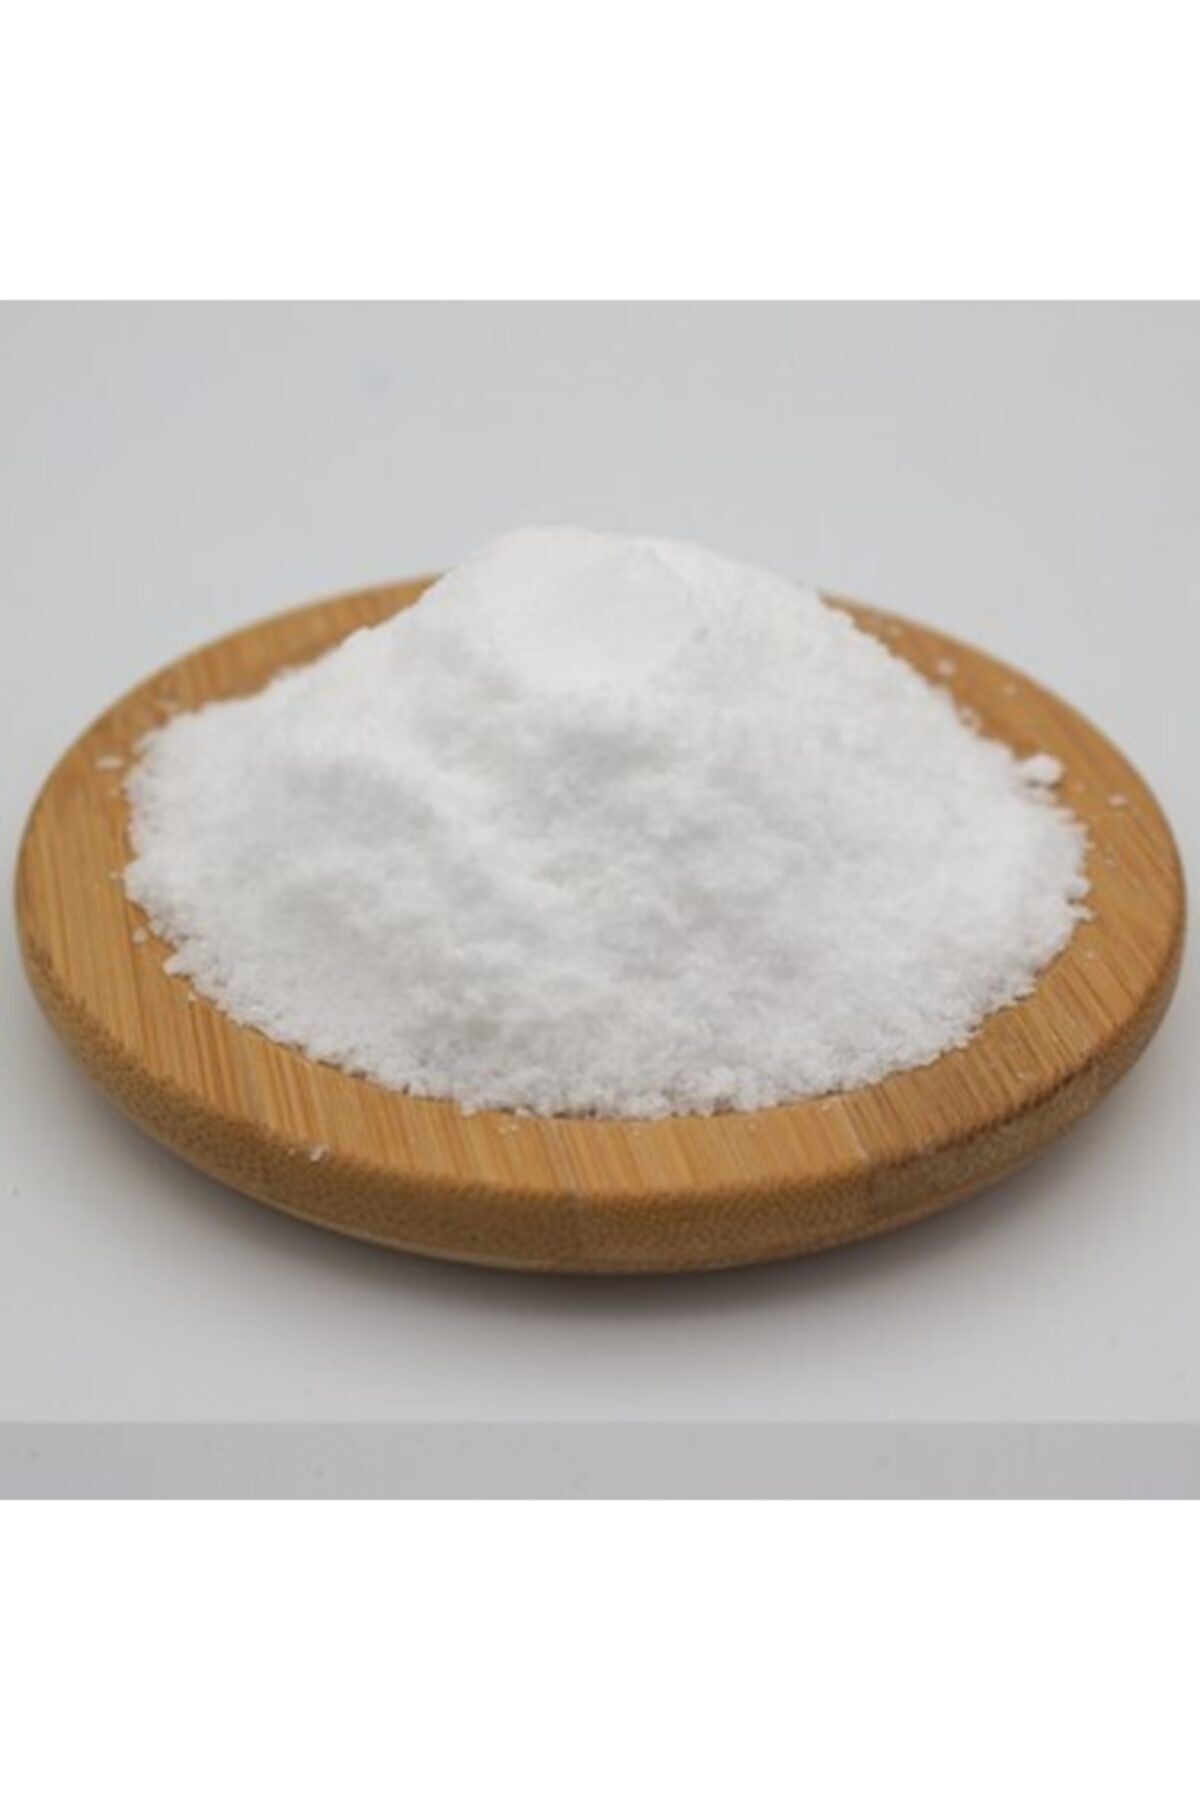 Kimyacınız Sodyum Bikarbonat ( Yemek Sodası ) Karbonat 5 Kilogram Gıda Karbonatı Temizlik Karbonatı